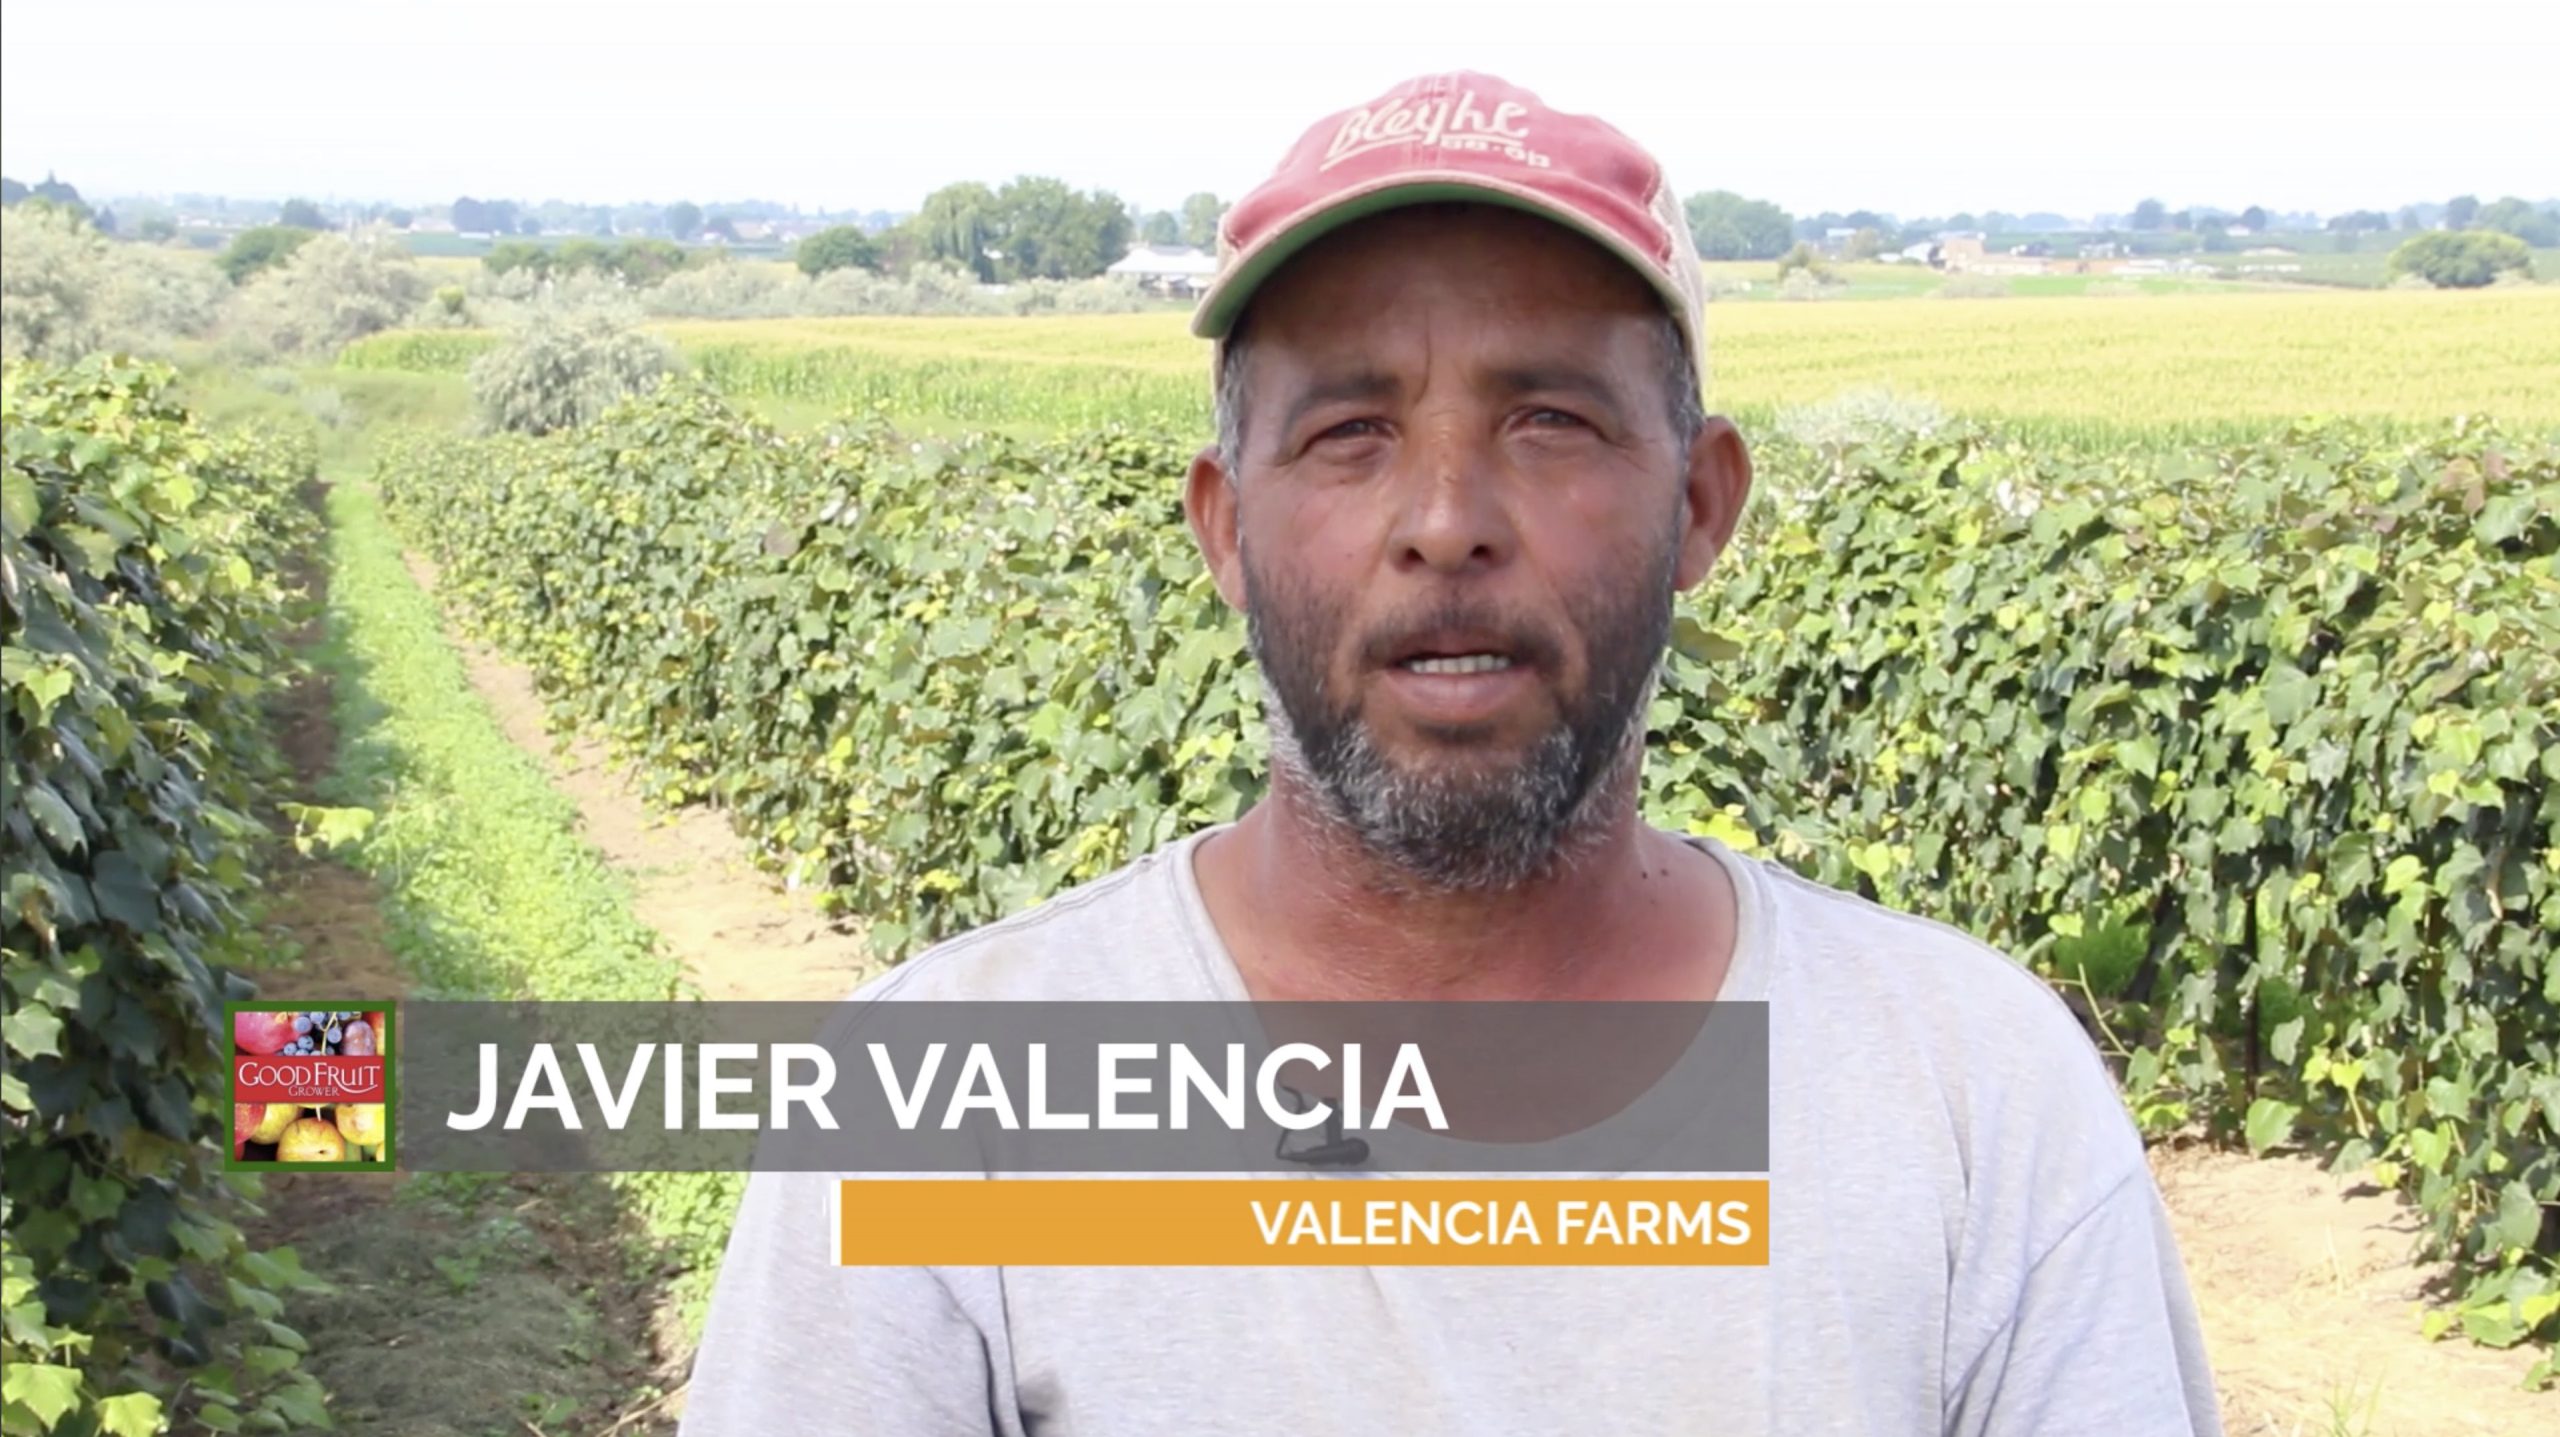 Javier Valencia video